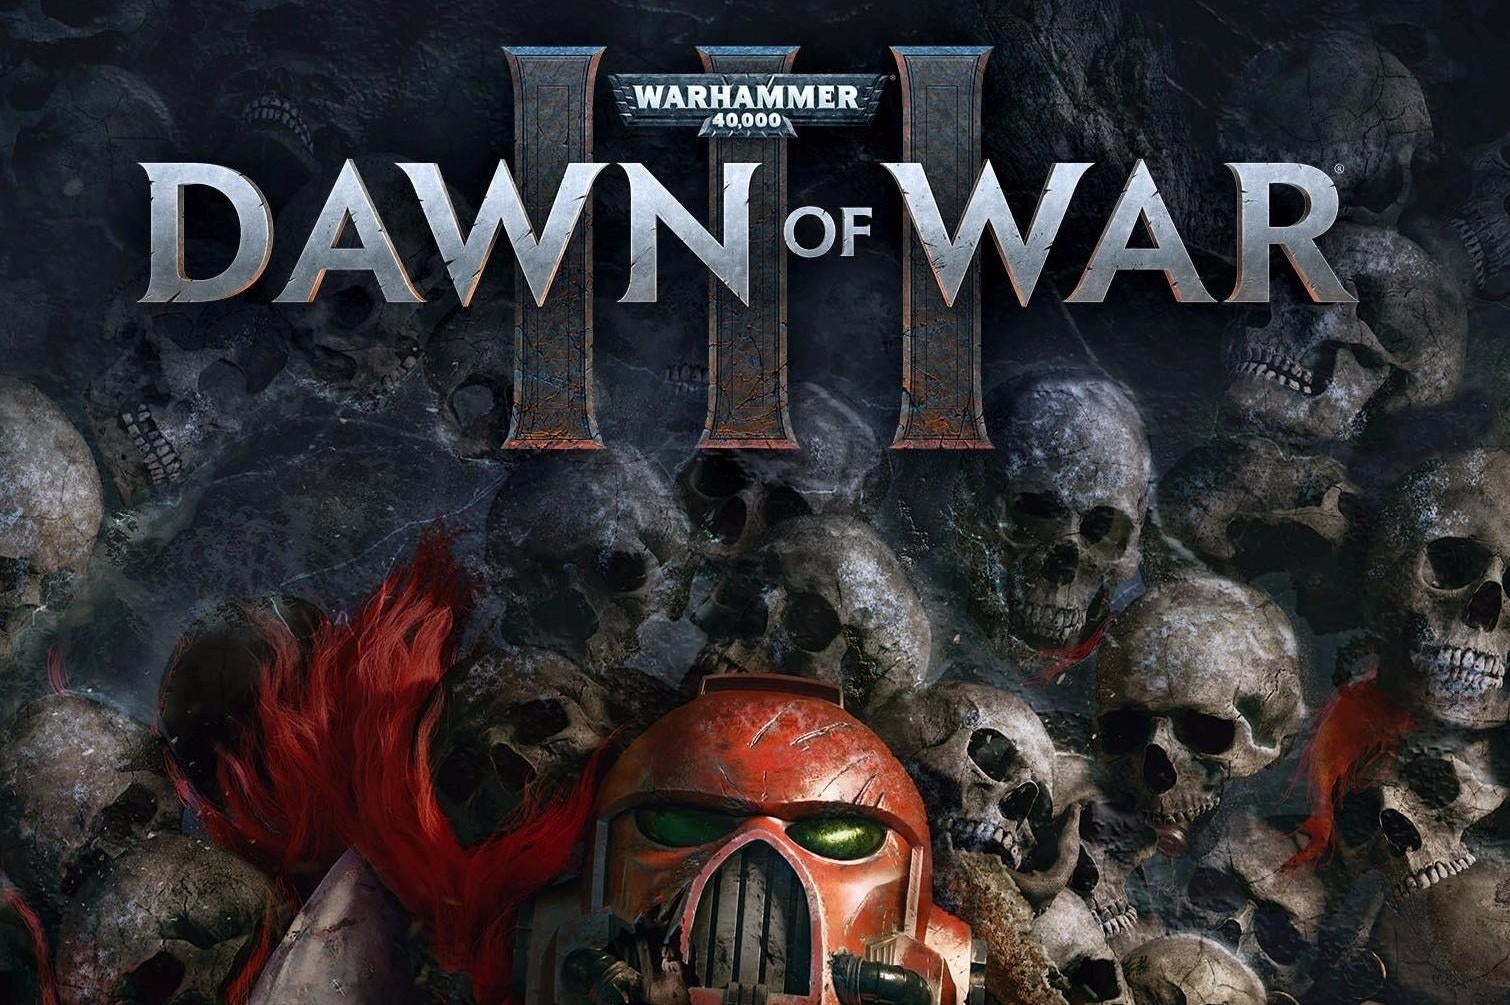 Immagine di Warhammer 40,000: Dawn of War III si mostra in due nuovi video